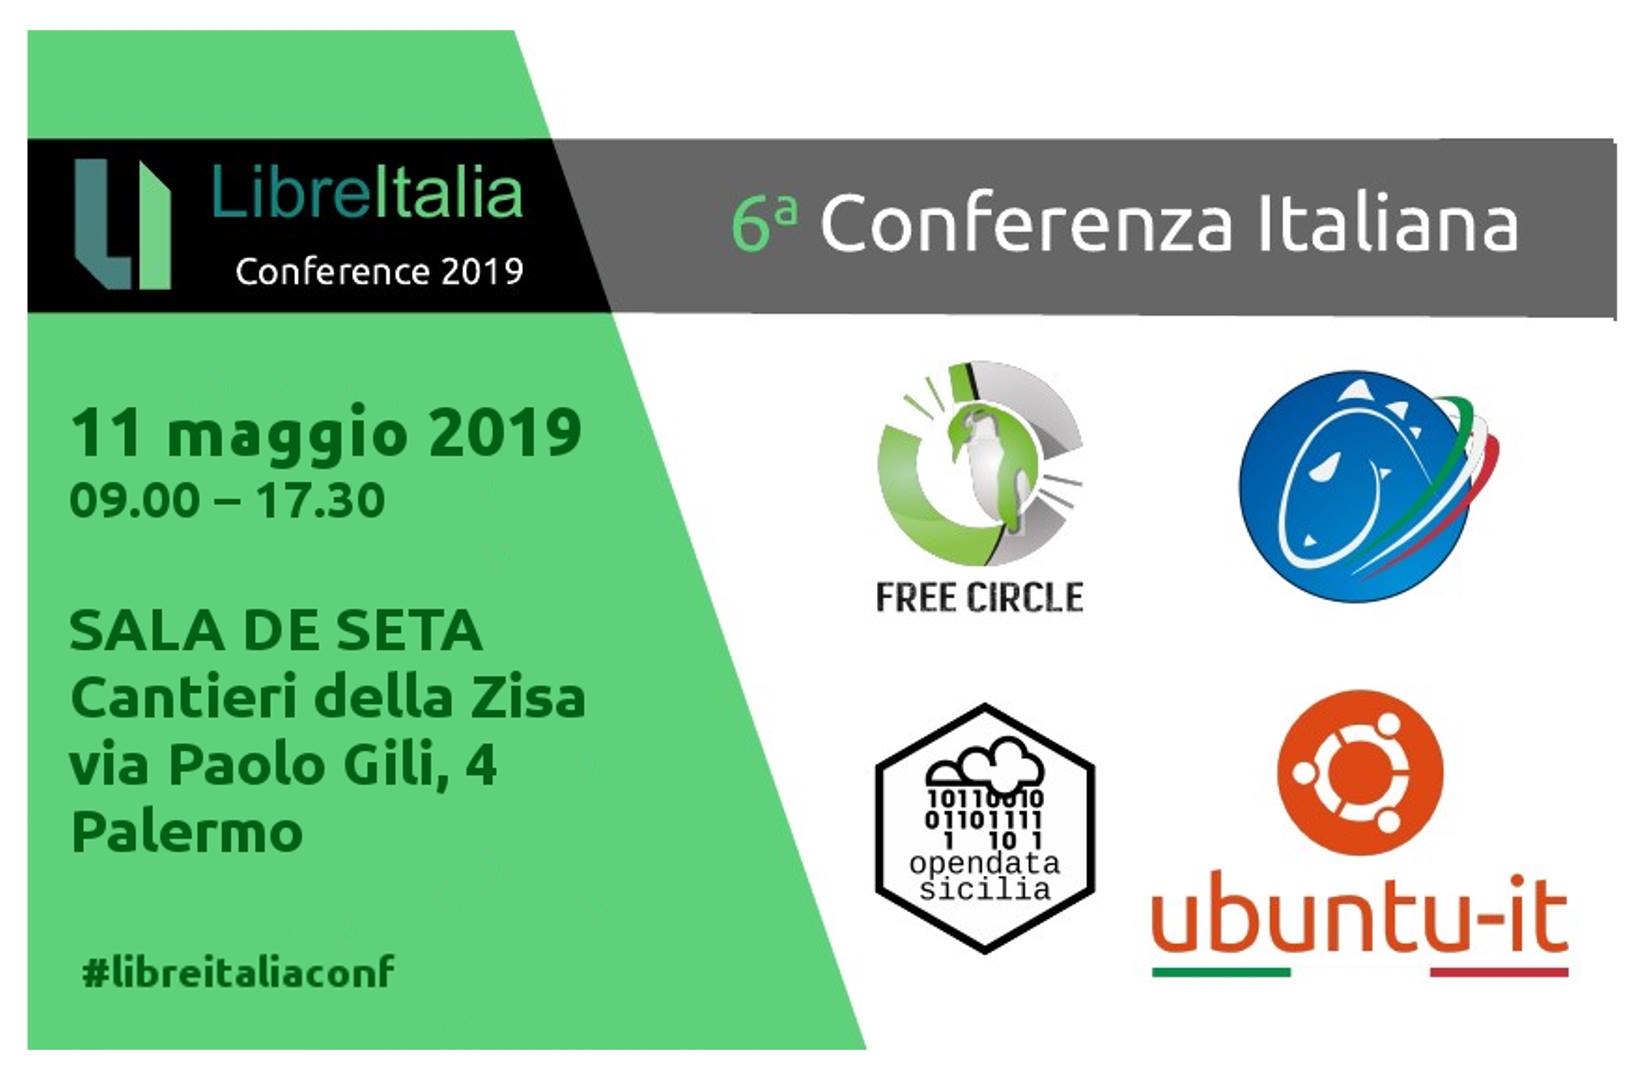 LibreItalia Conference 2019: 11 maggio a Palermo